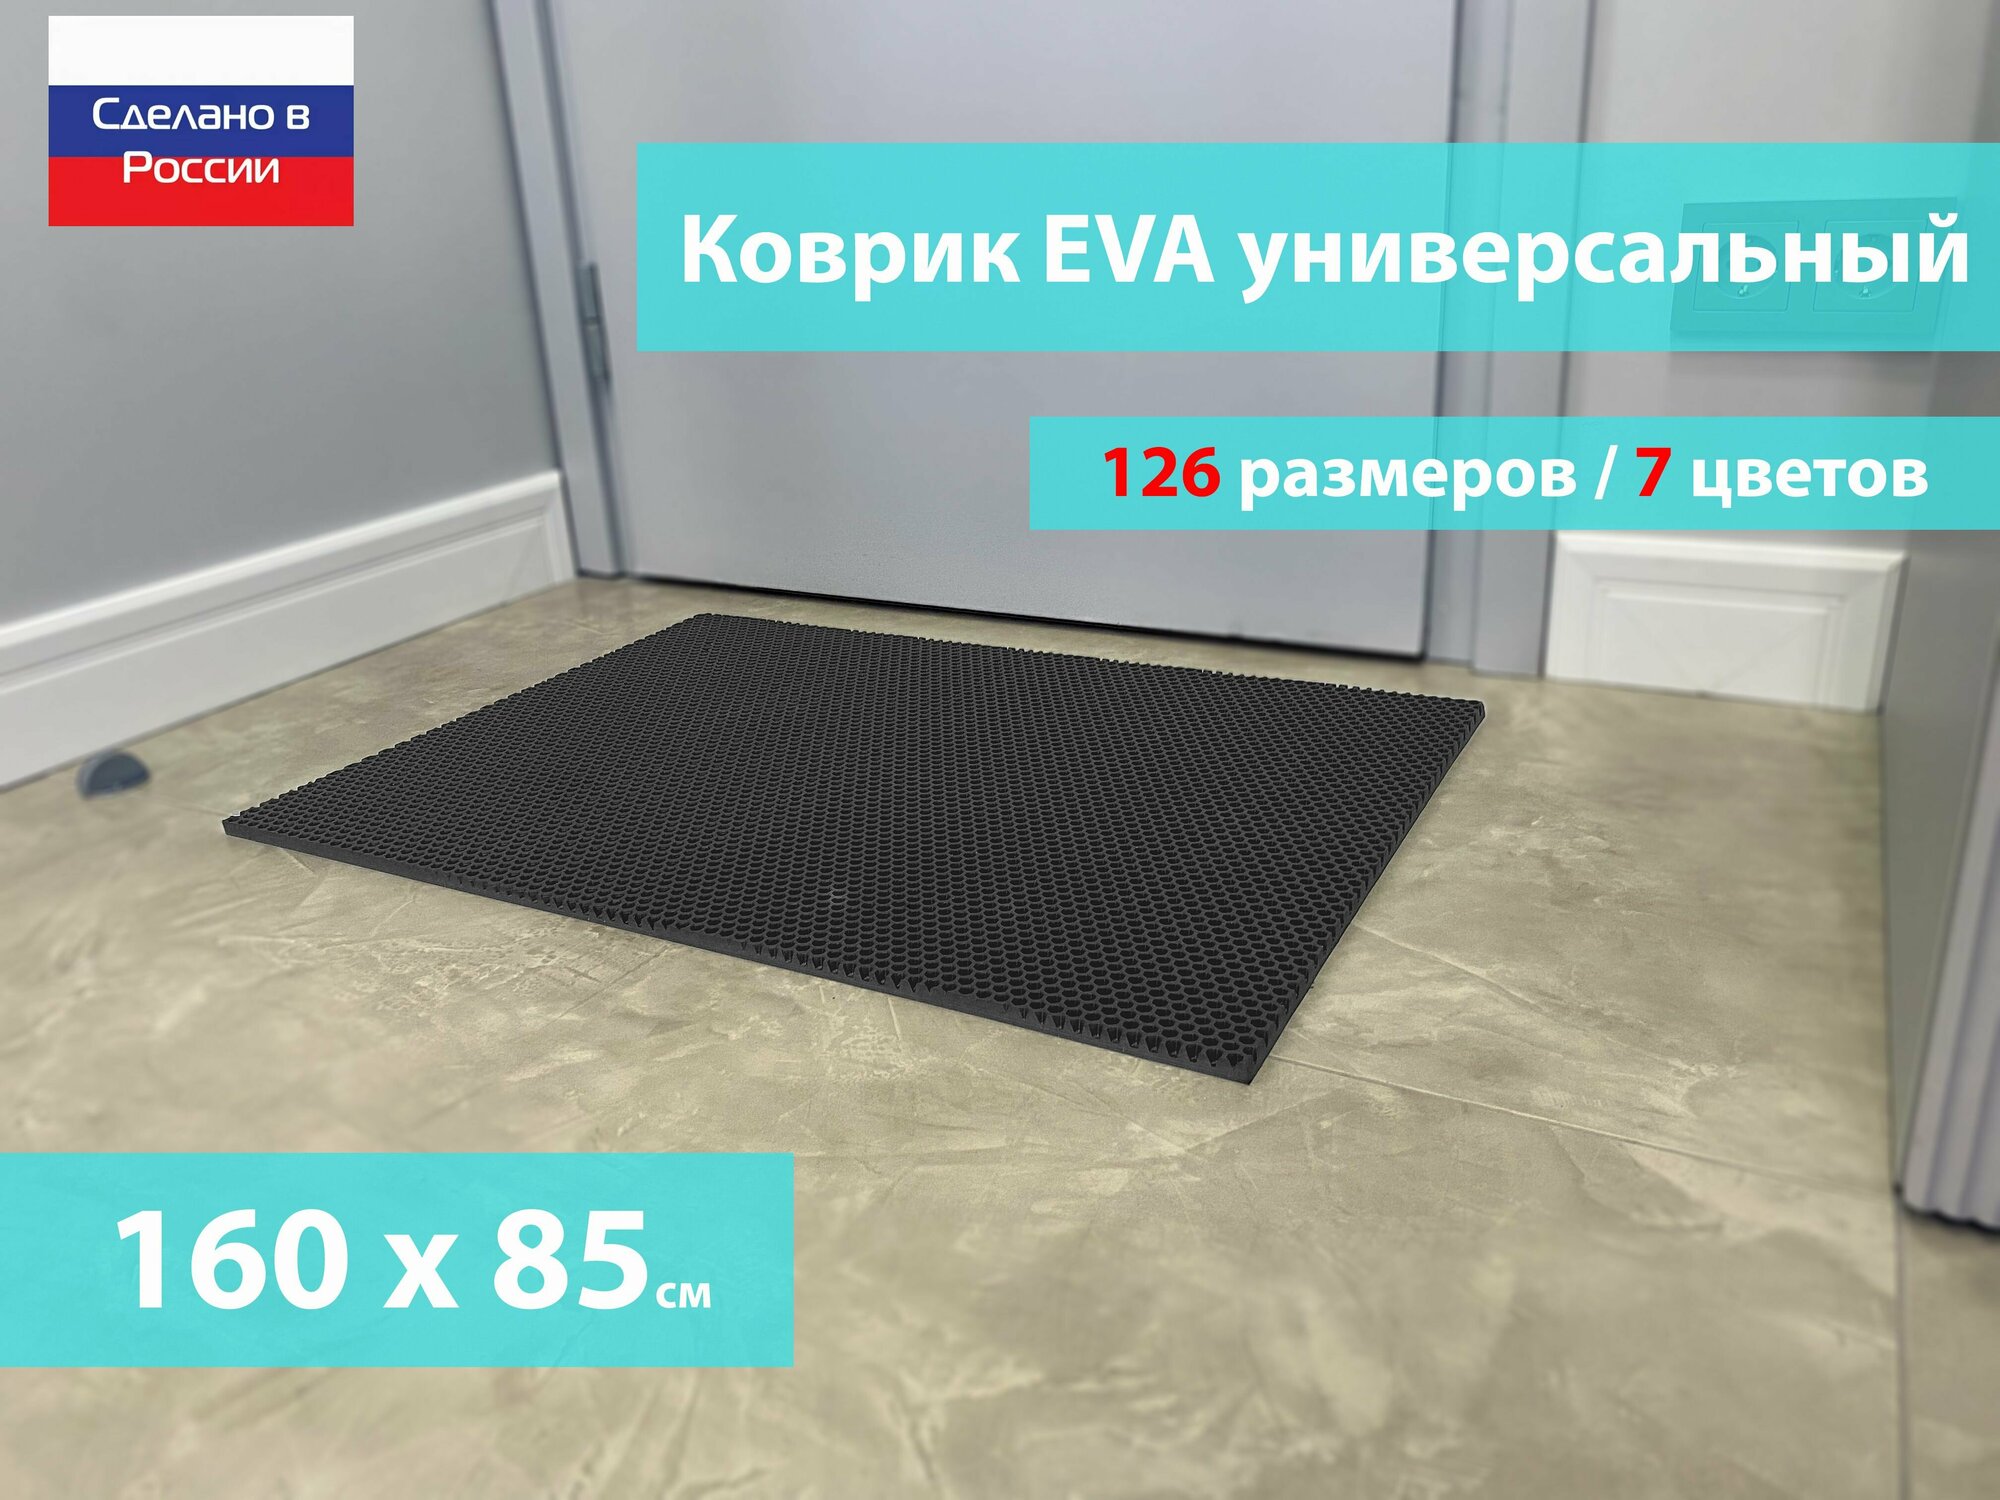 Коврик придверный EVA (ЕВА) в прихожую для обуви / Ковер ЭВА на пол перед дверью/ серый / размер 160 х 85 см